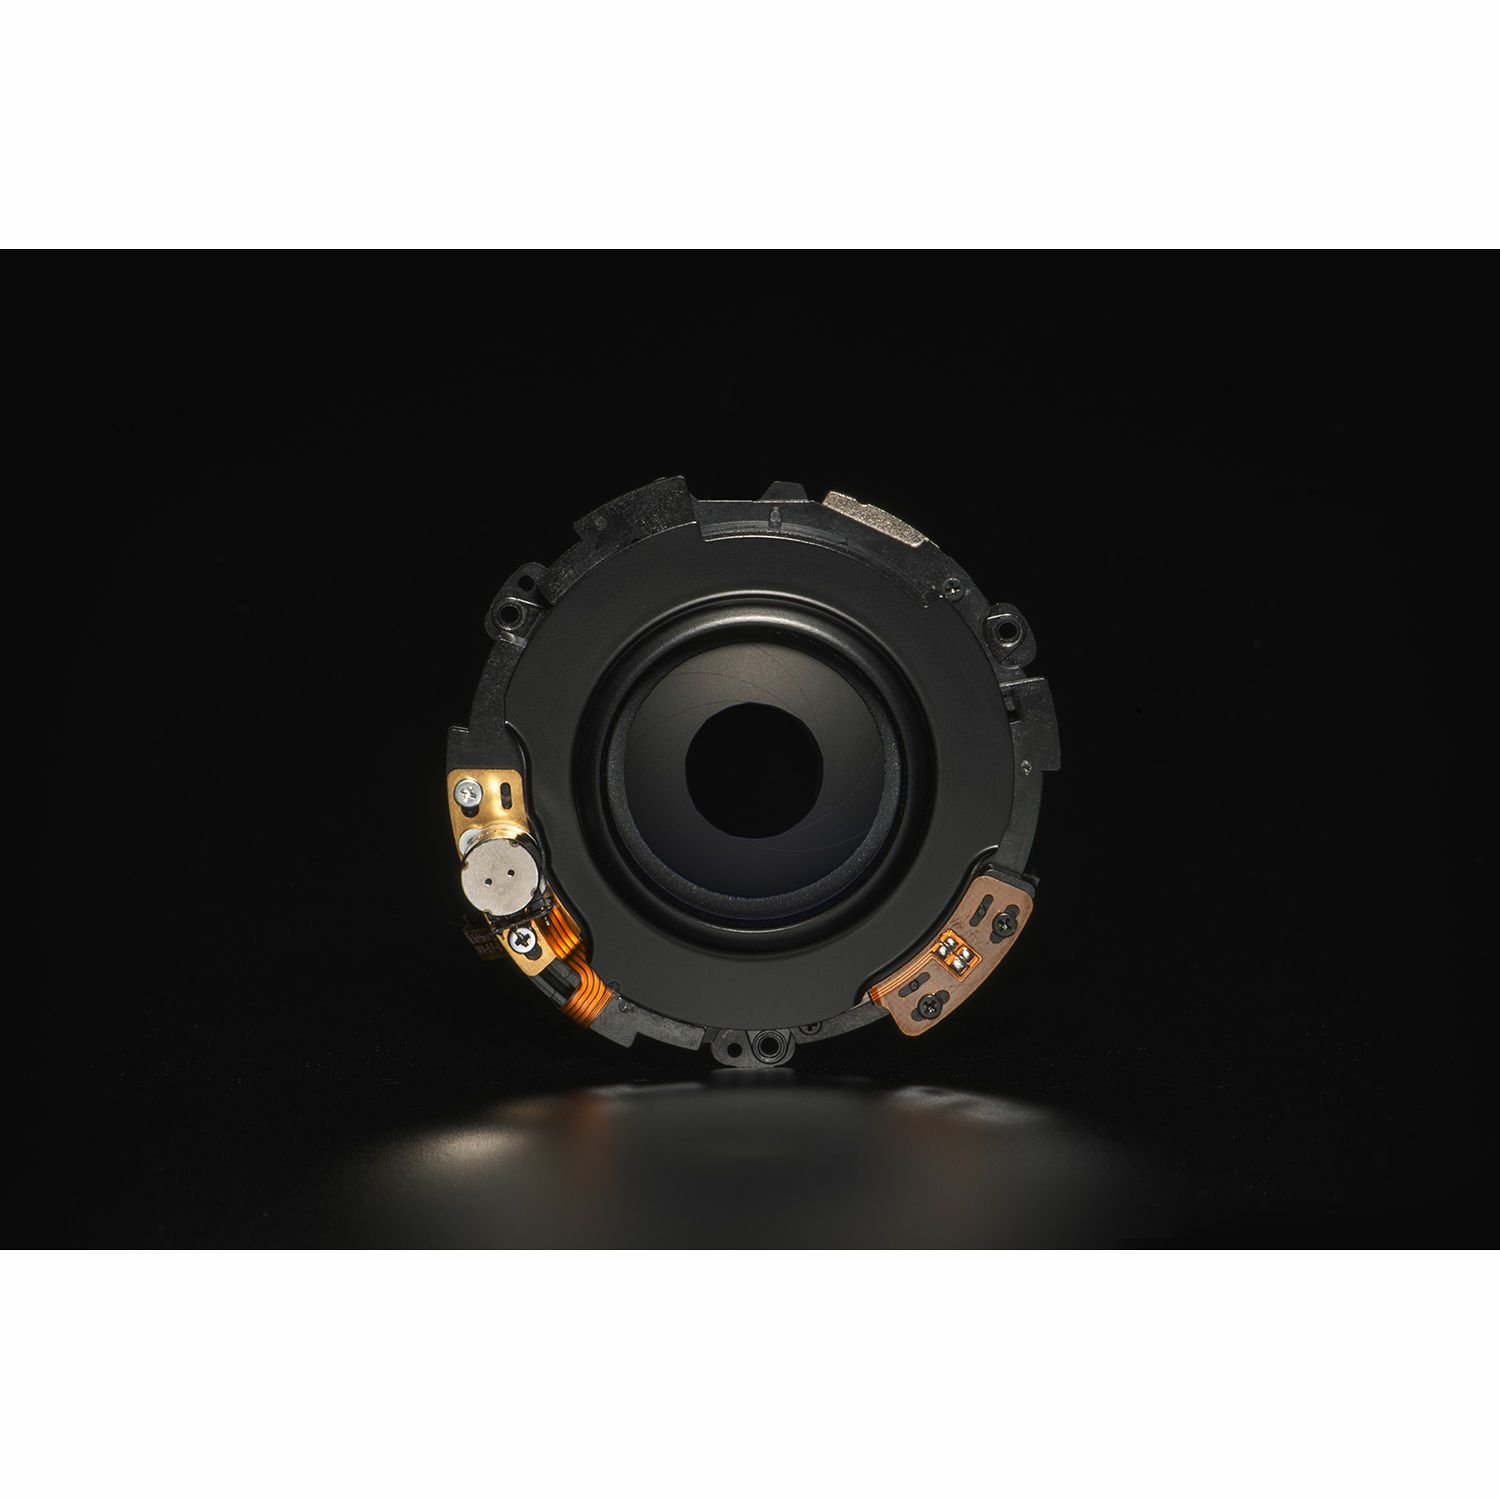 Tamron SP 24-70mm f/2.8 Di VC USD G2 objektiv za Nikon FX (A032N)